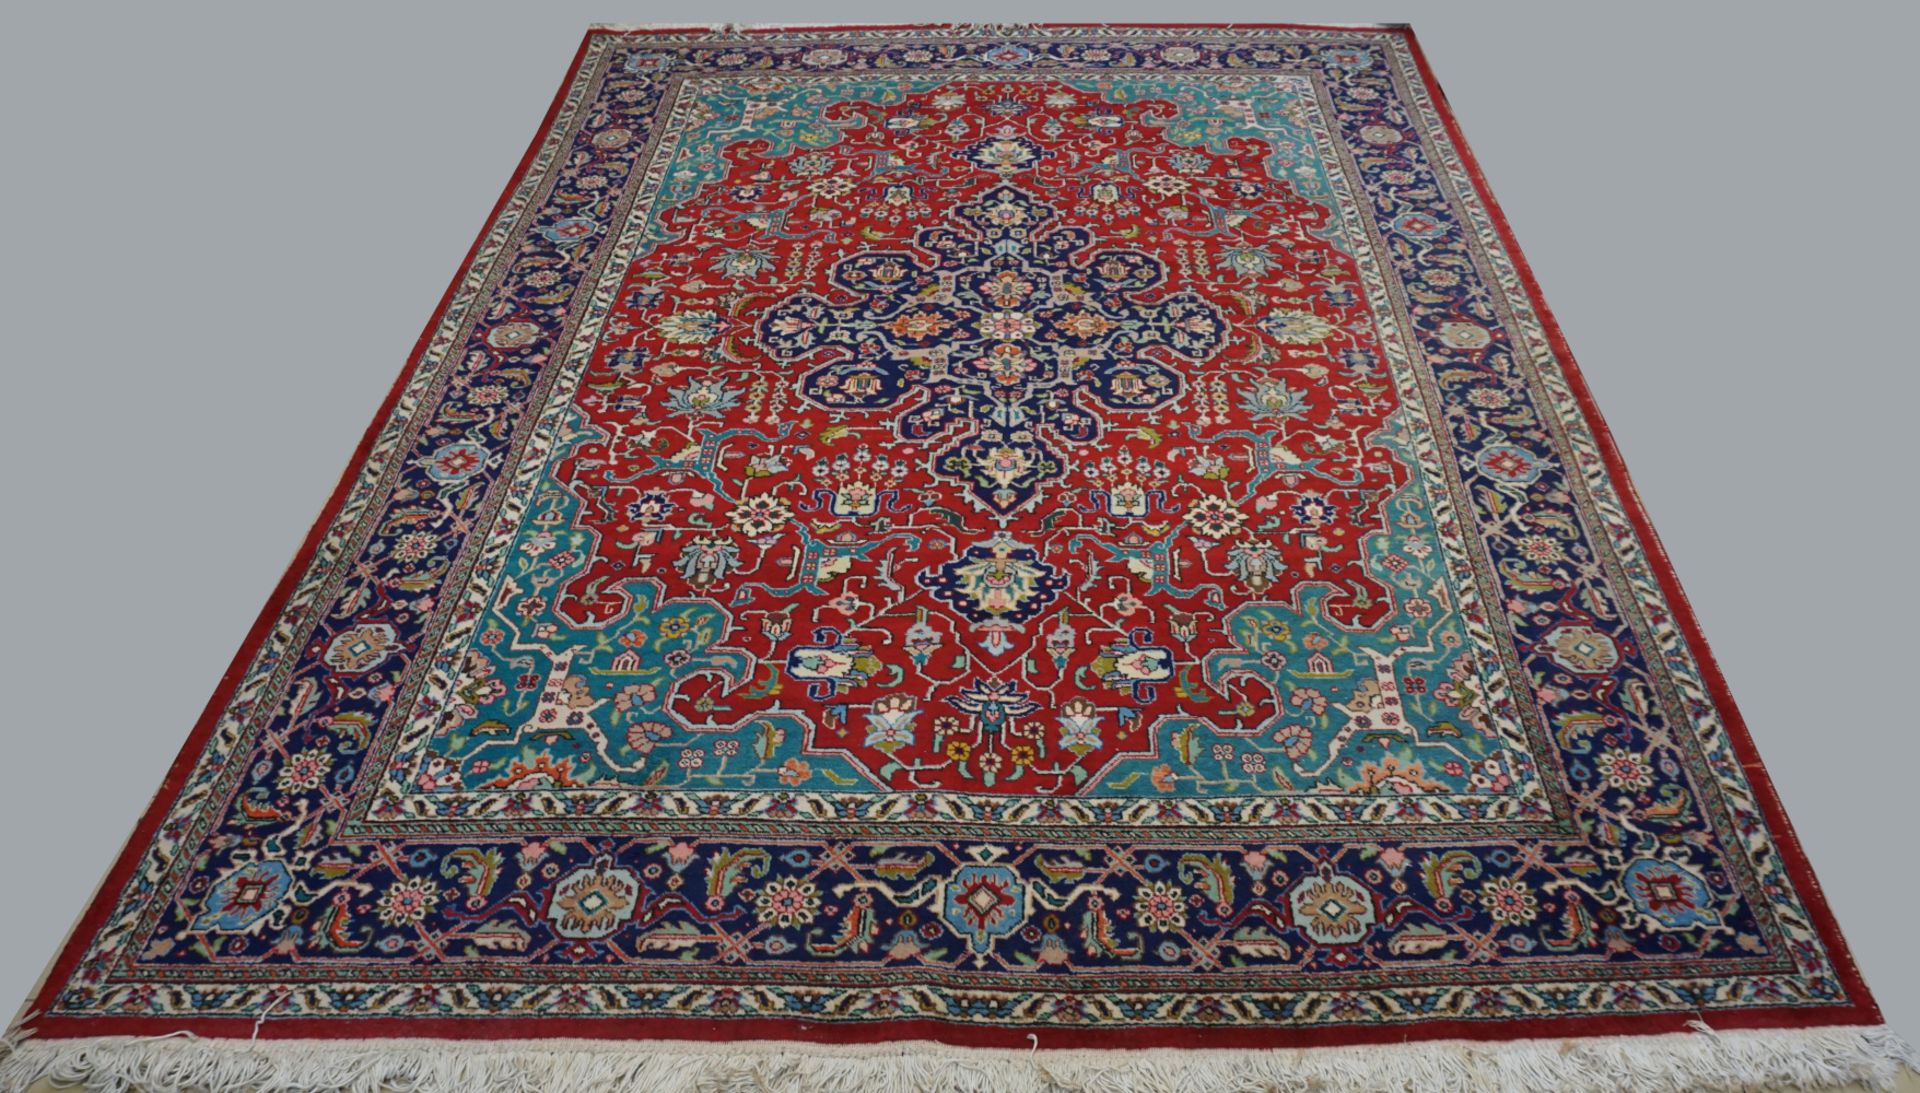 1 Orientteppich, Wolle, rot-/blaugrundig, floraler Dekor mit Mittelmedaillon,